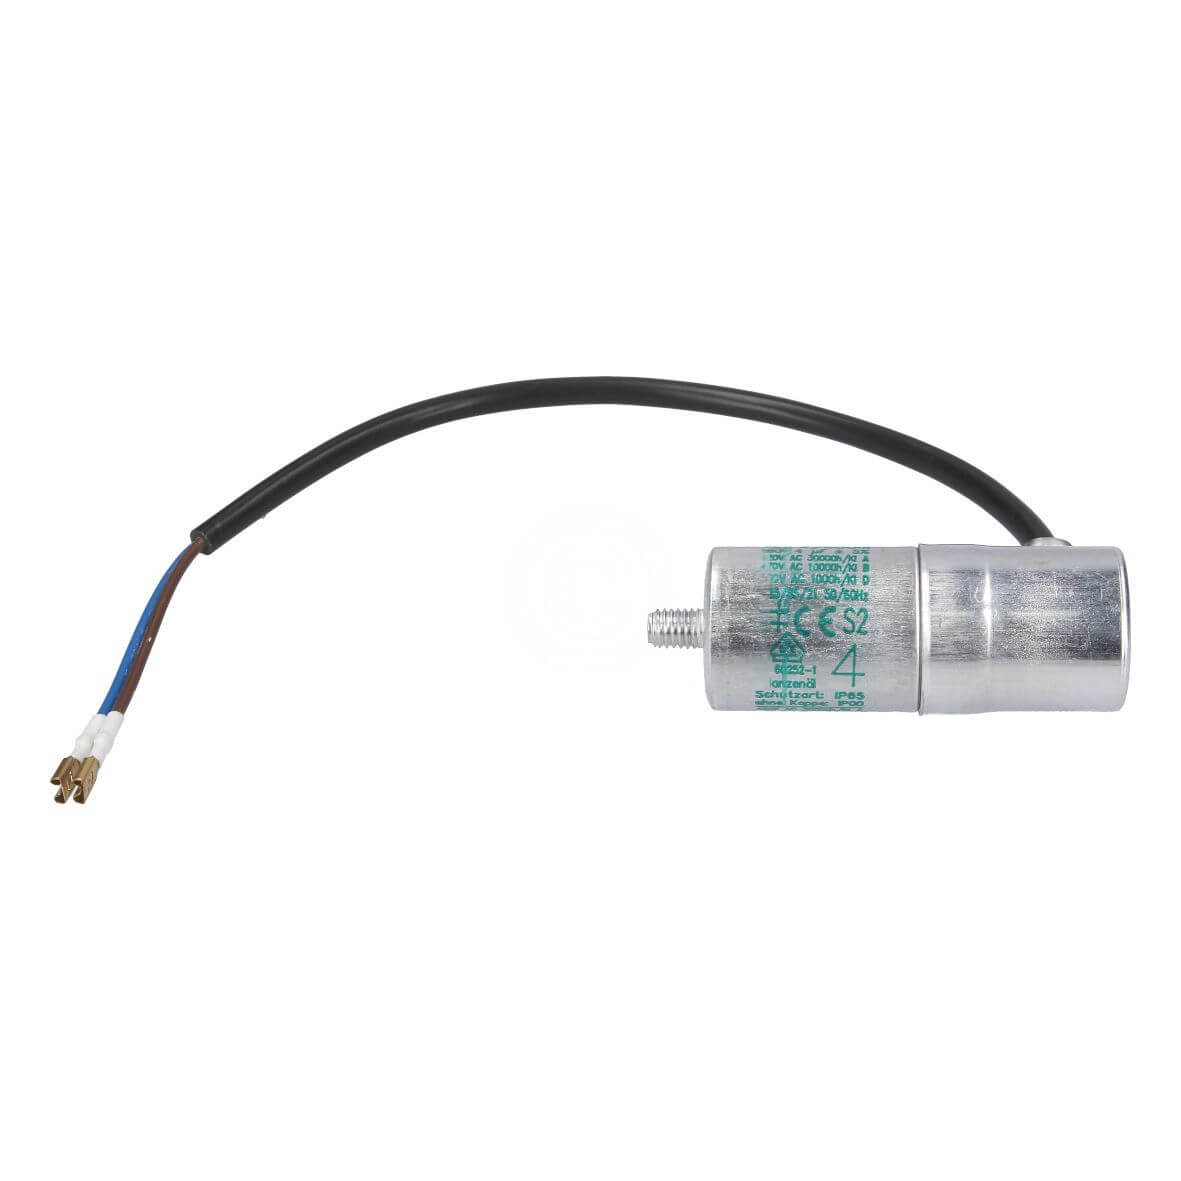 Kondensator BSH 00613712 4µF mit Kabel für Kühlschrank KühlGefrierKombination Gefrierschrank (KD-00613712) von BSH (Bosch-Siemens-Hausgeräte)